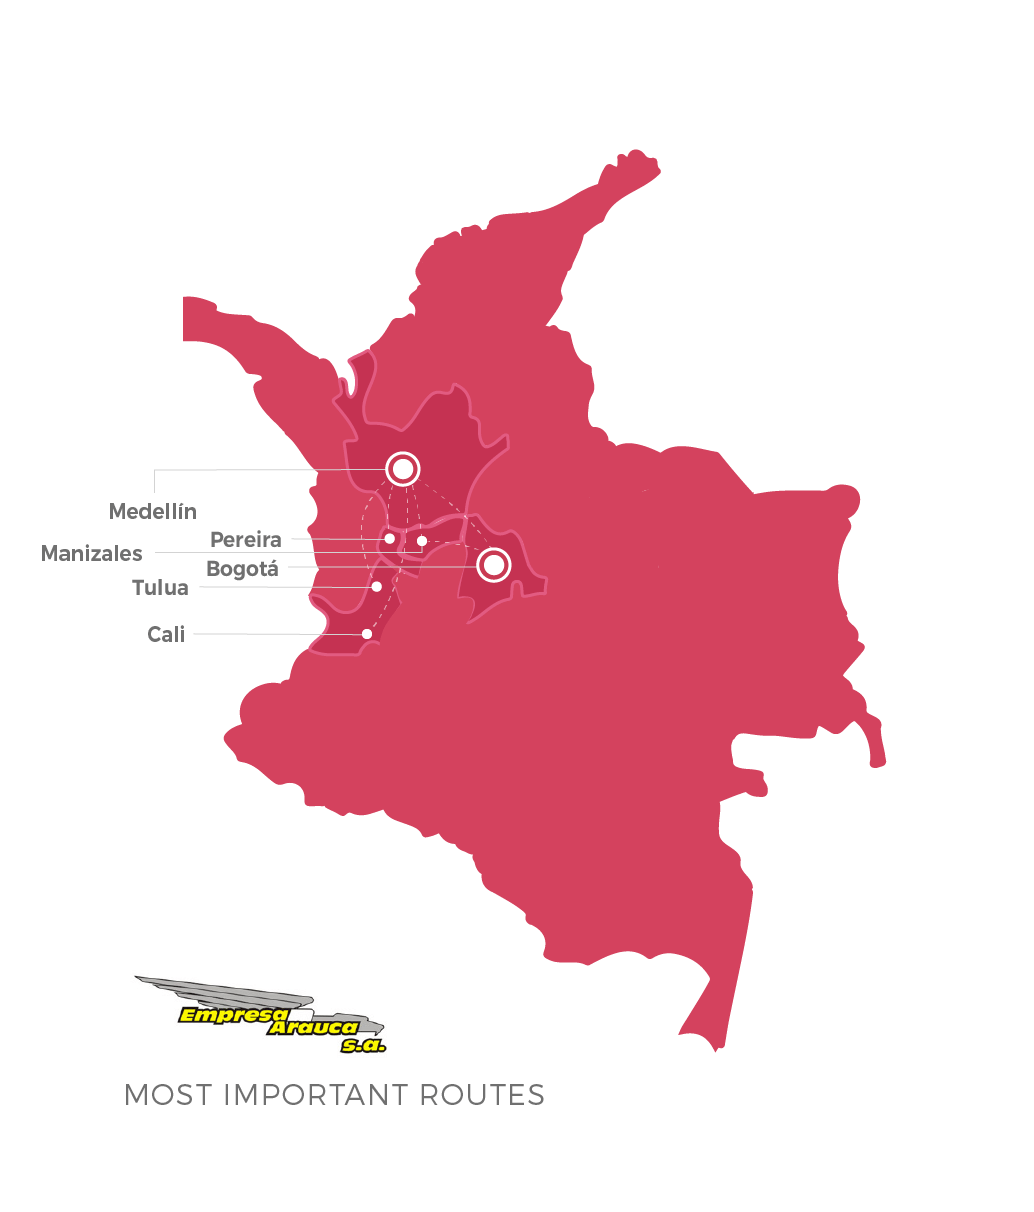 Empresa Arauca top destinations